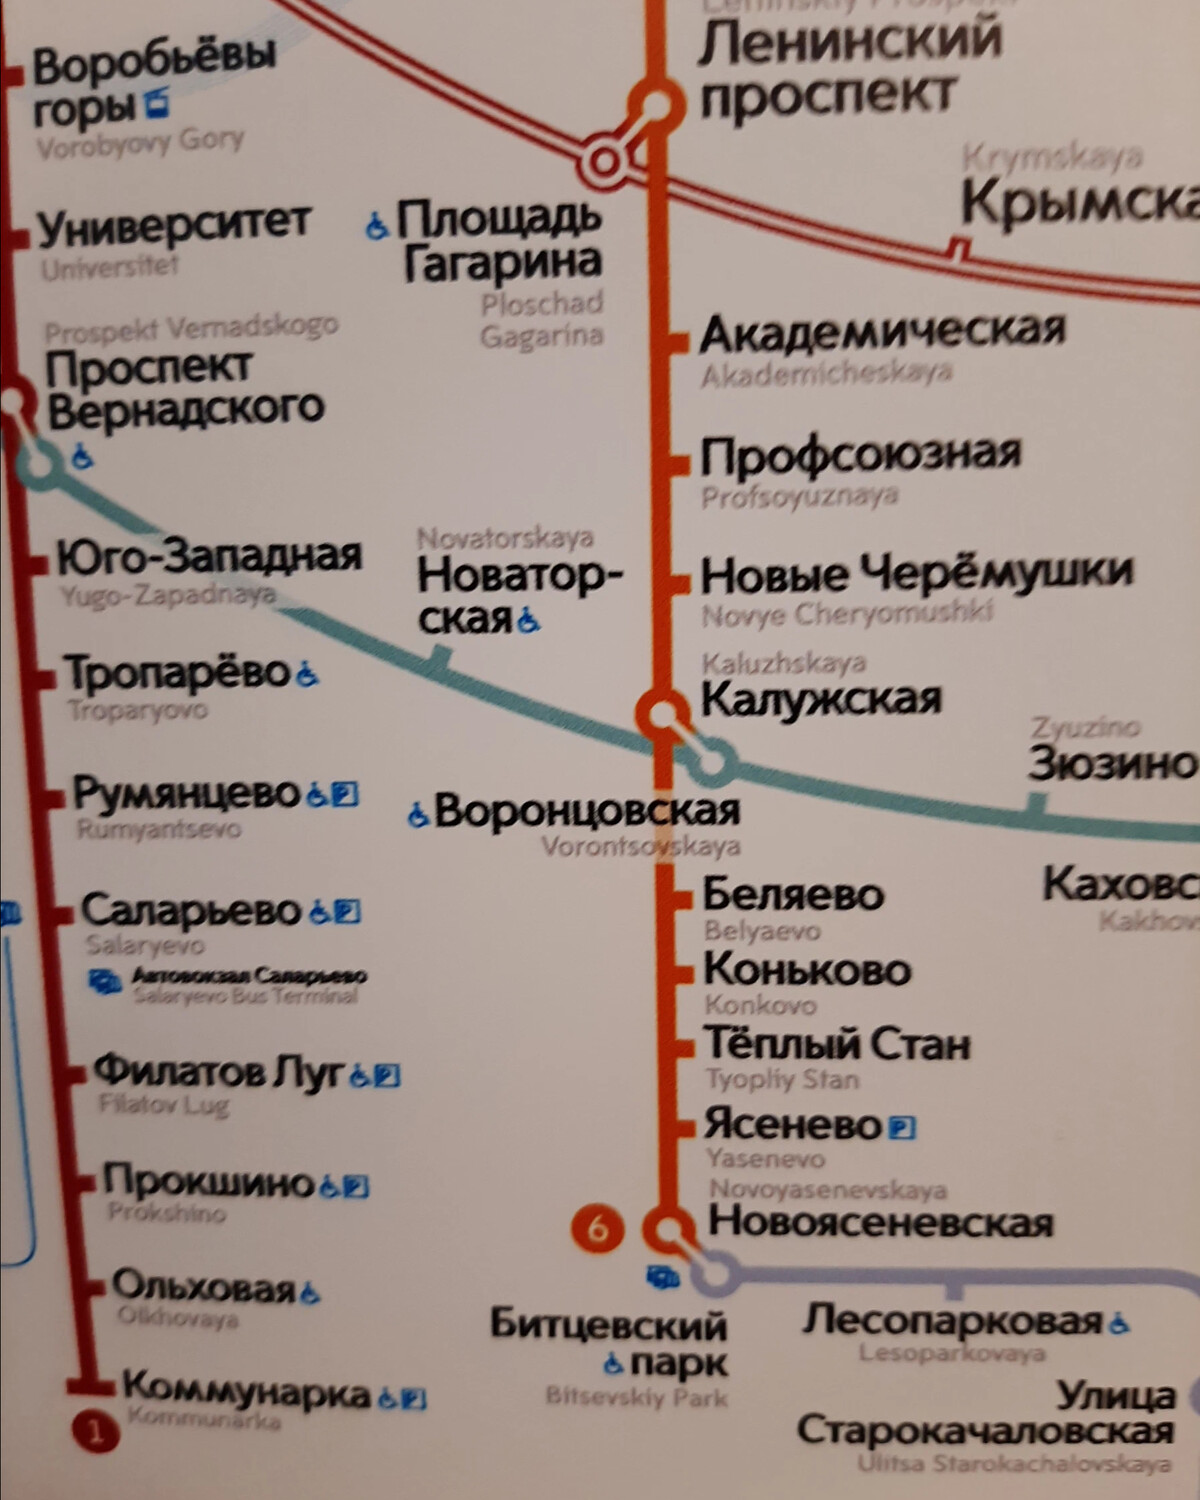 москва метро калужская